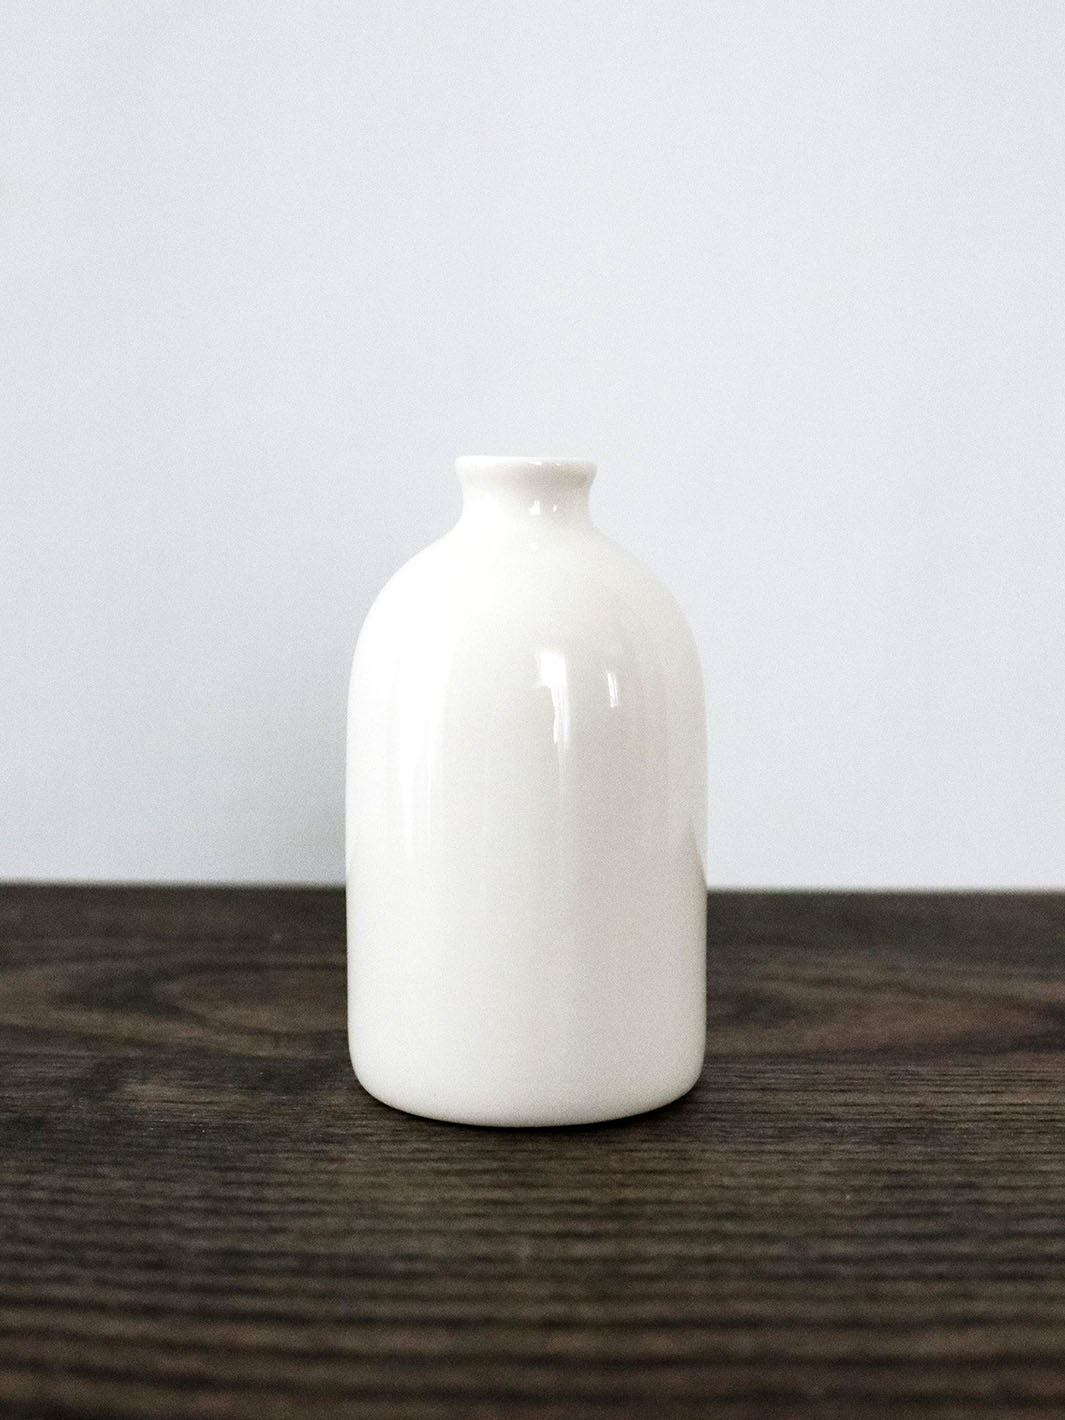 White Porcelain Bud Vase Earthly Comfort Home Decor ECH752-2